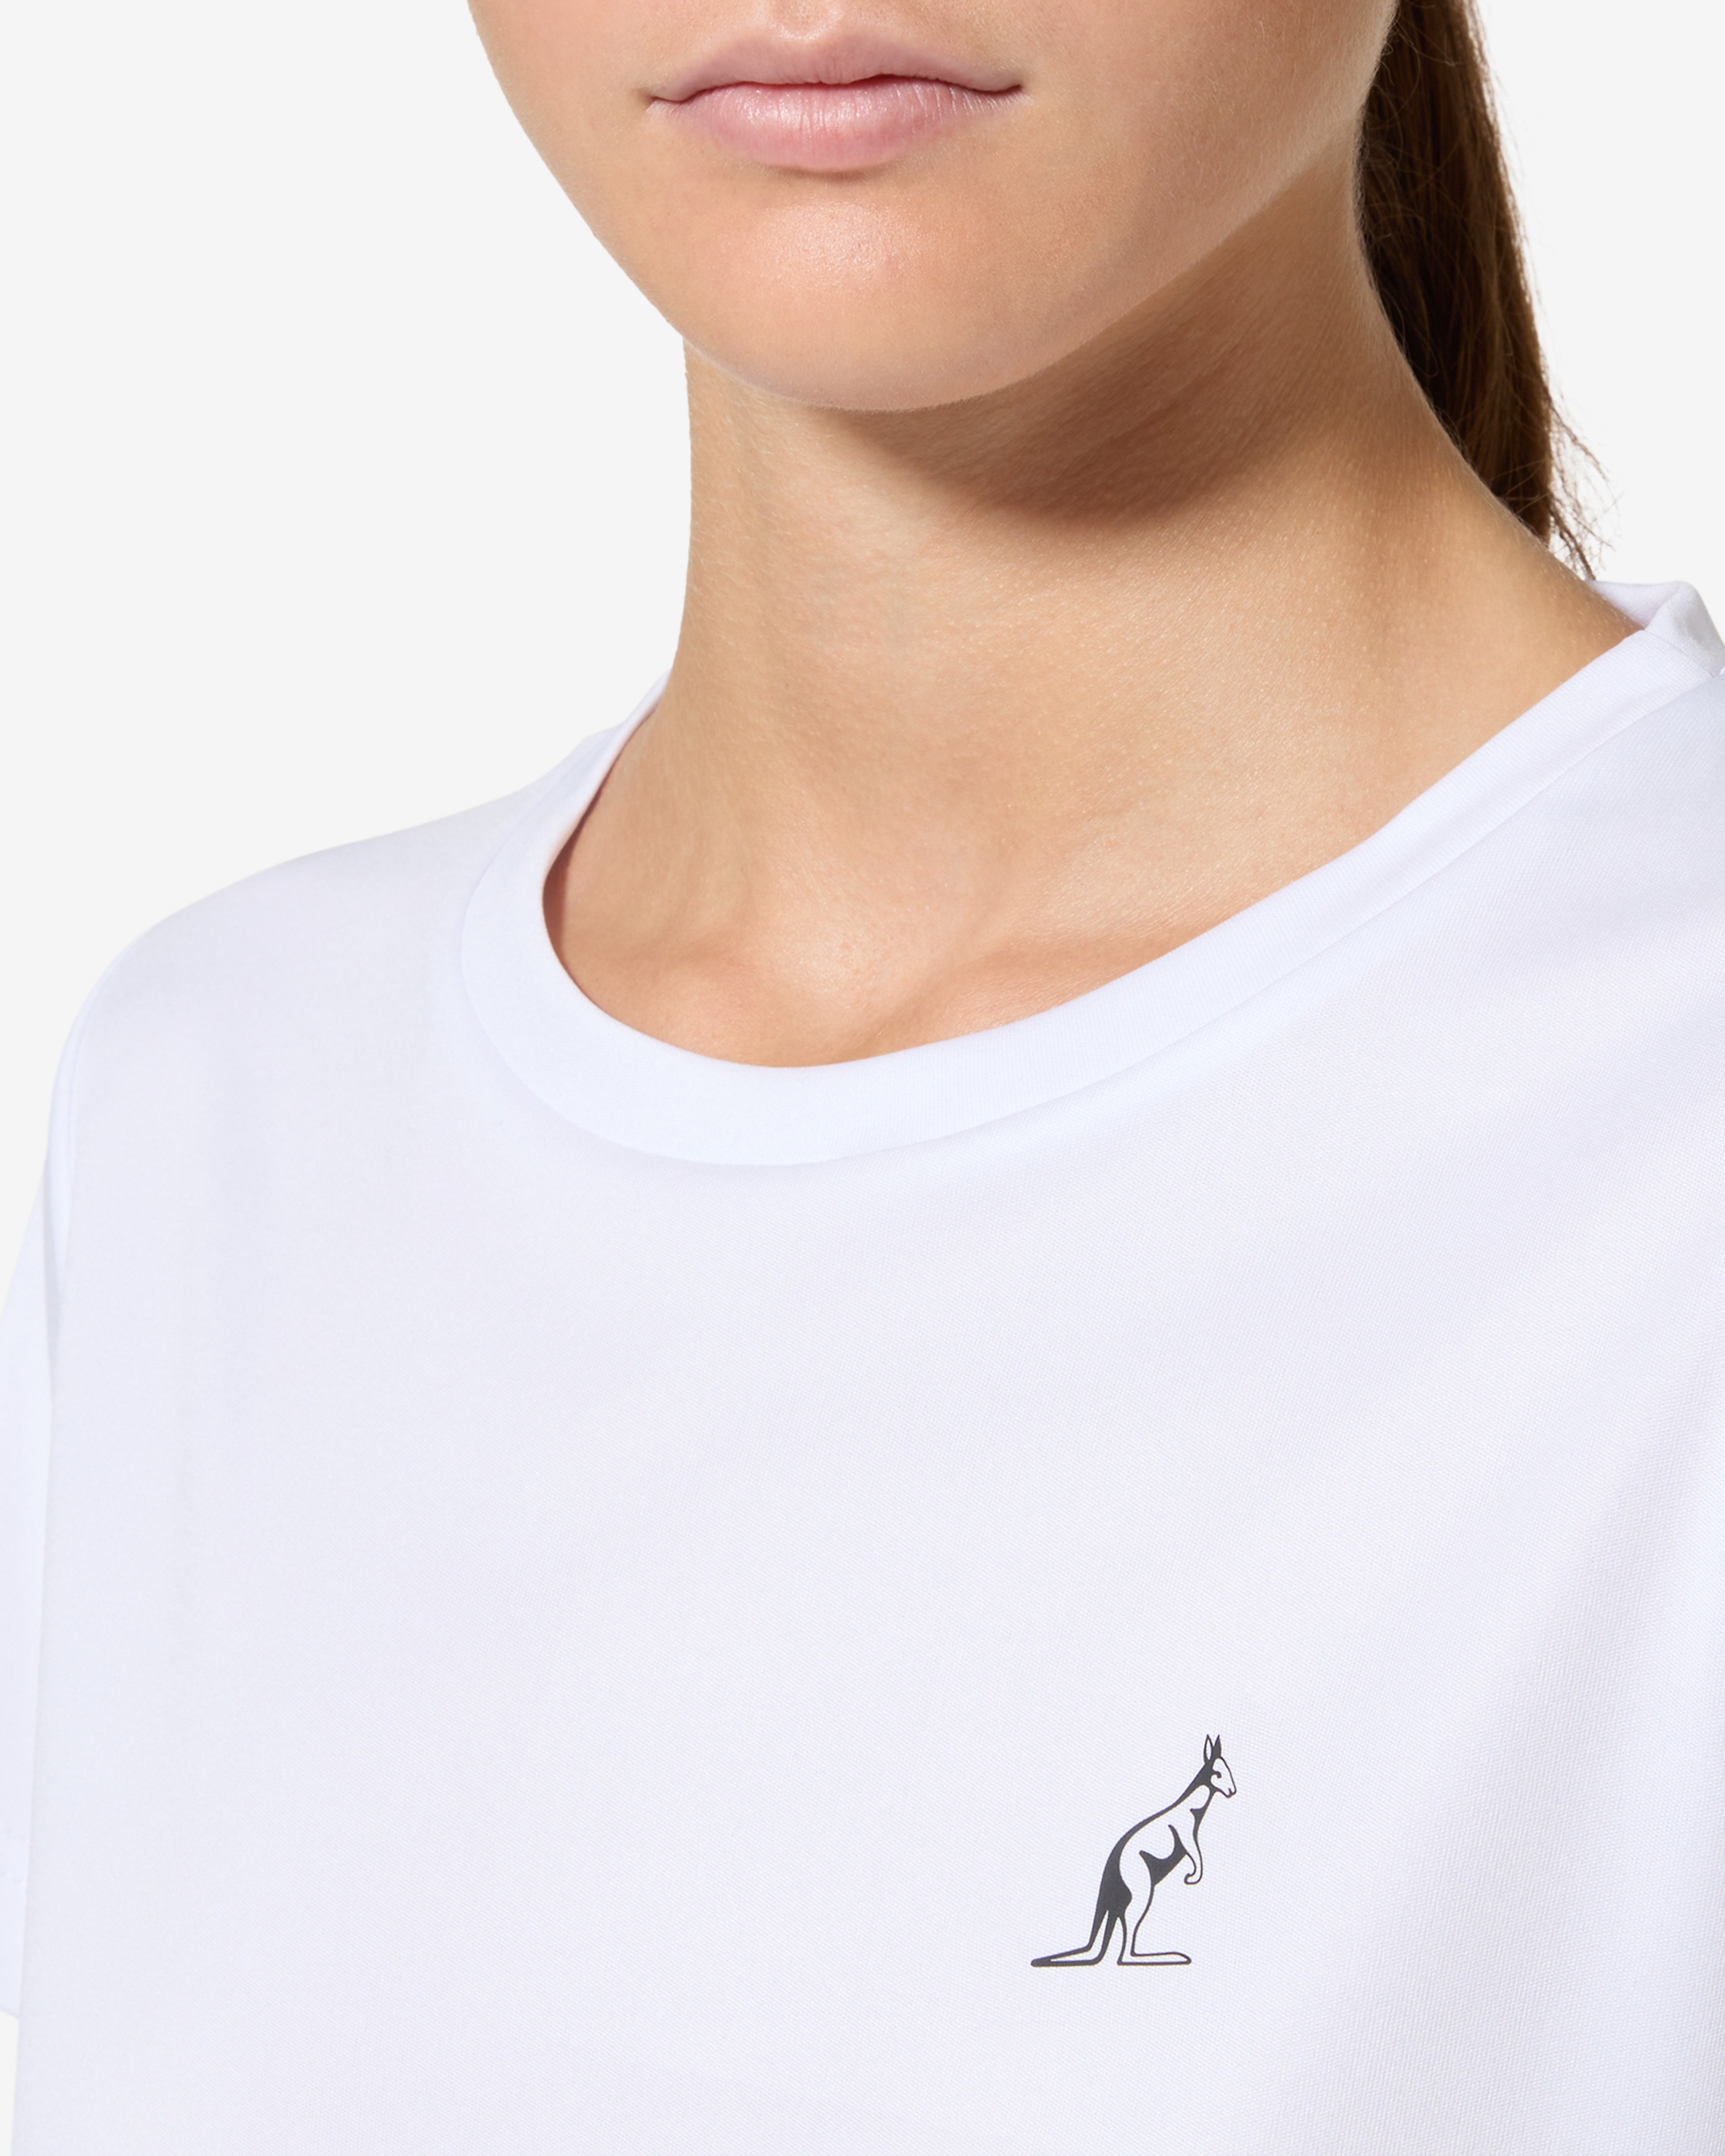 Essence T-shirt: Australian Tennis